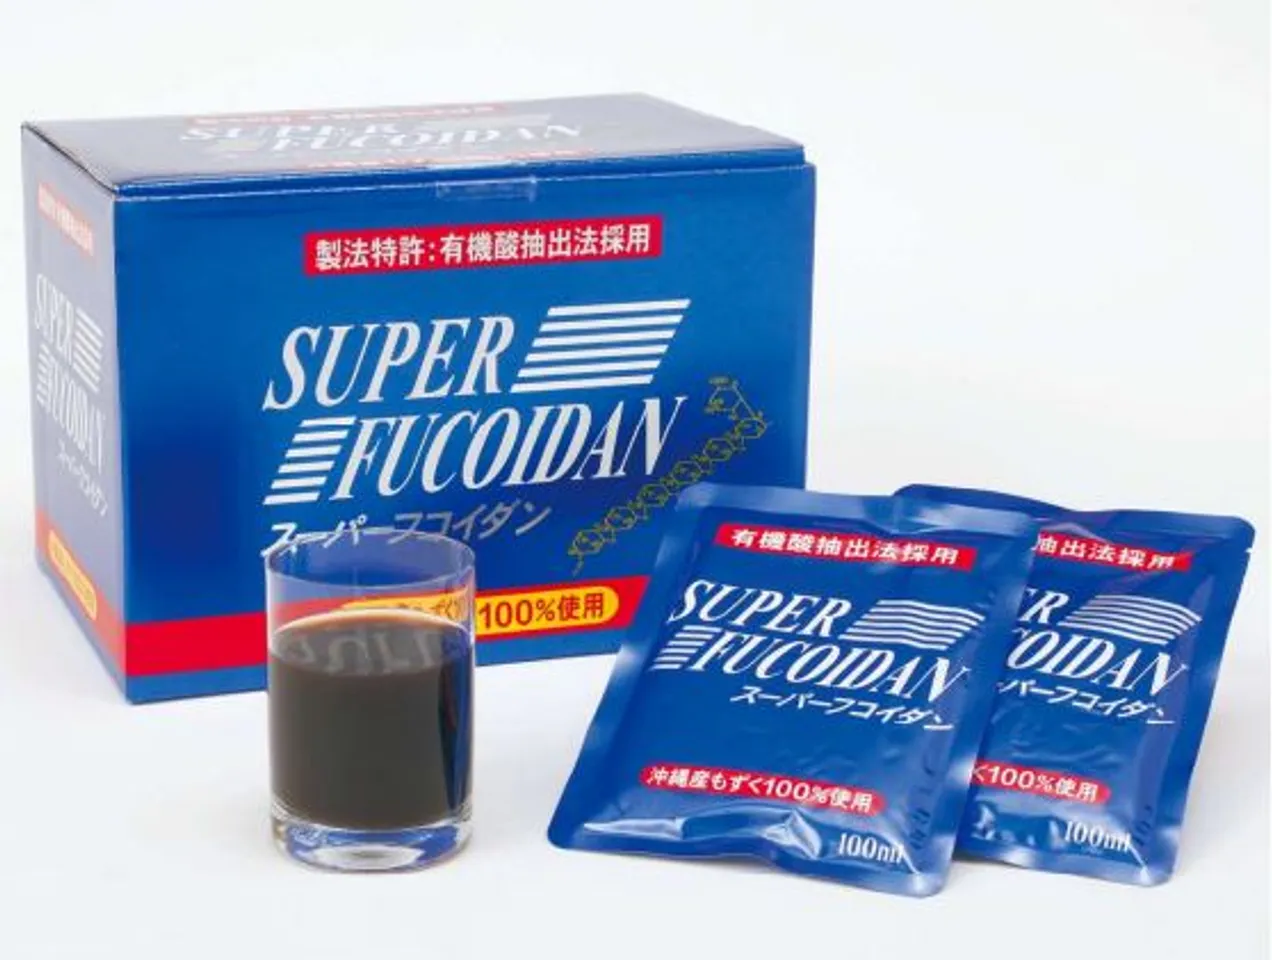 Nước uống Super Fucoidan hỗ trợ tăng cường sức đề kháng 